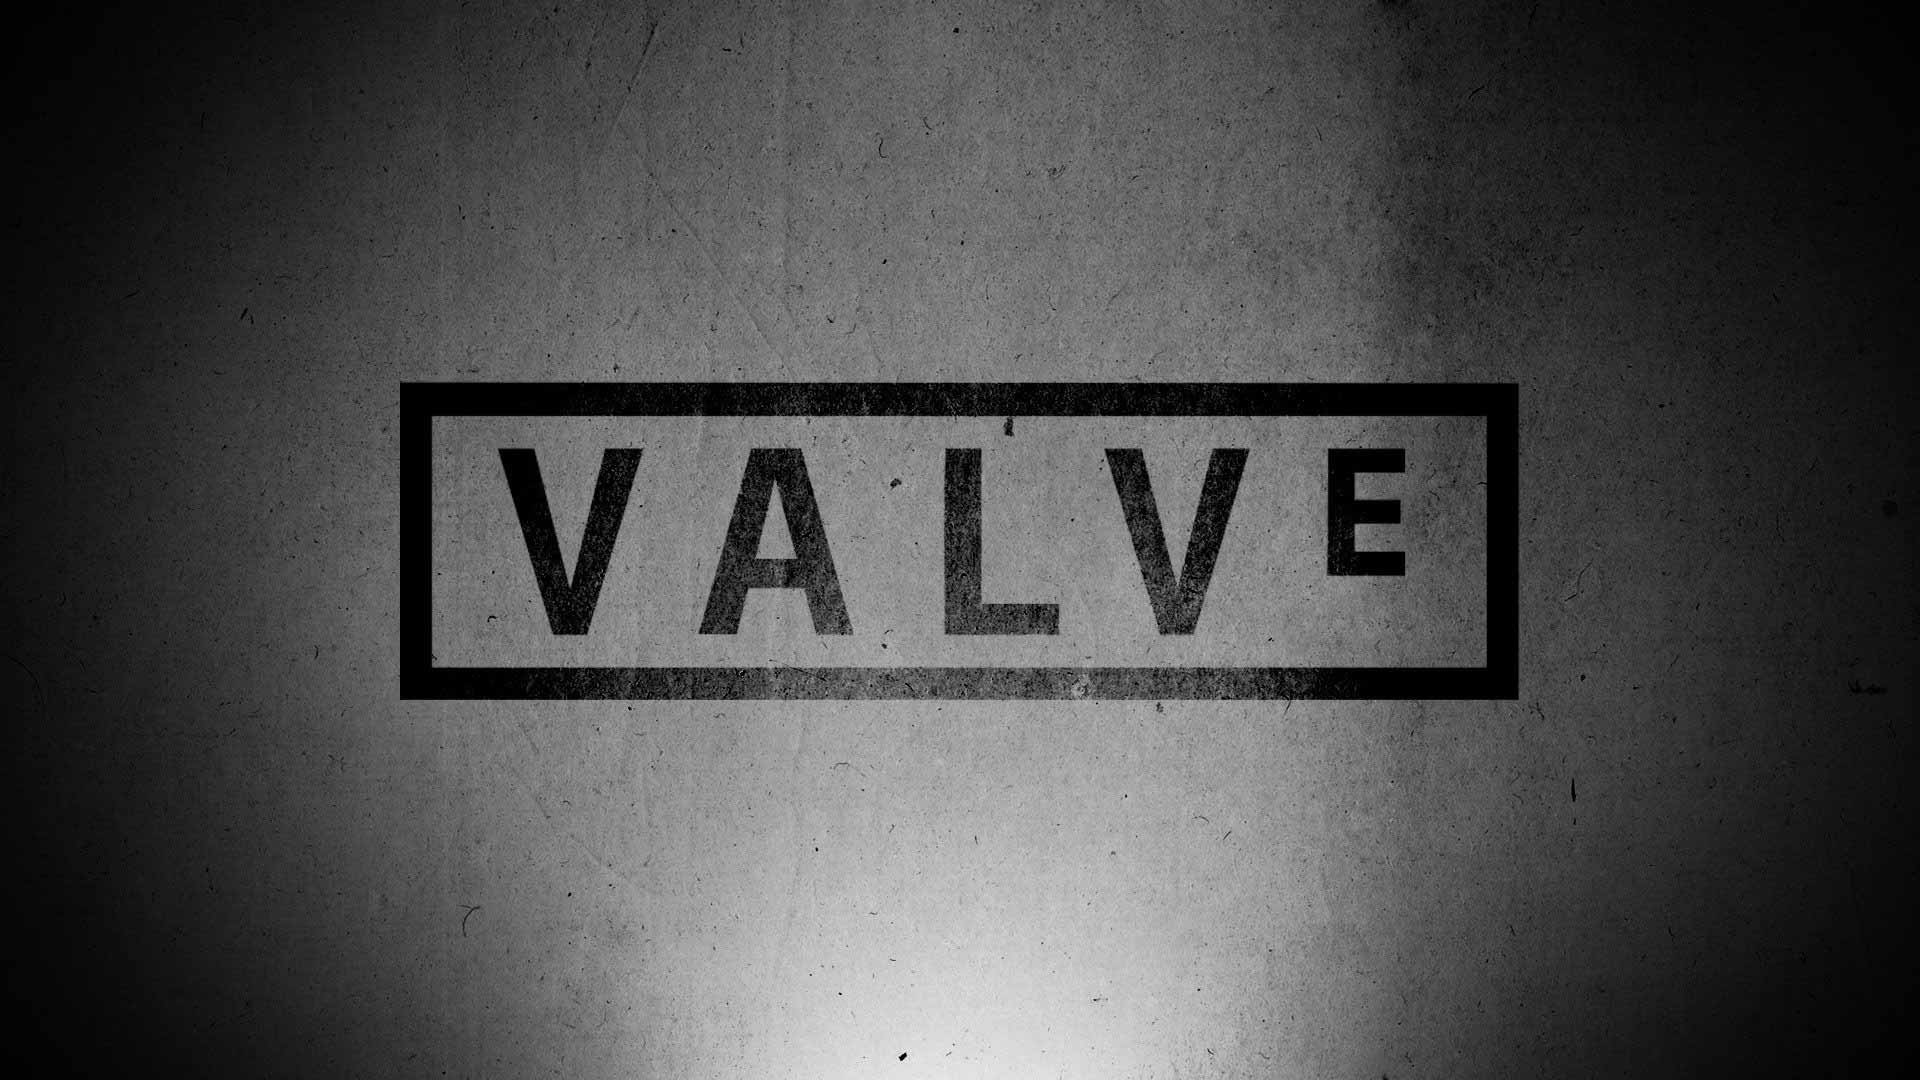 بازی هایی که امیدواریم شرکت Valve دنباله آن ها را تولید کند